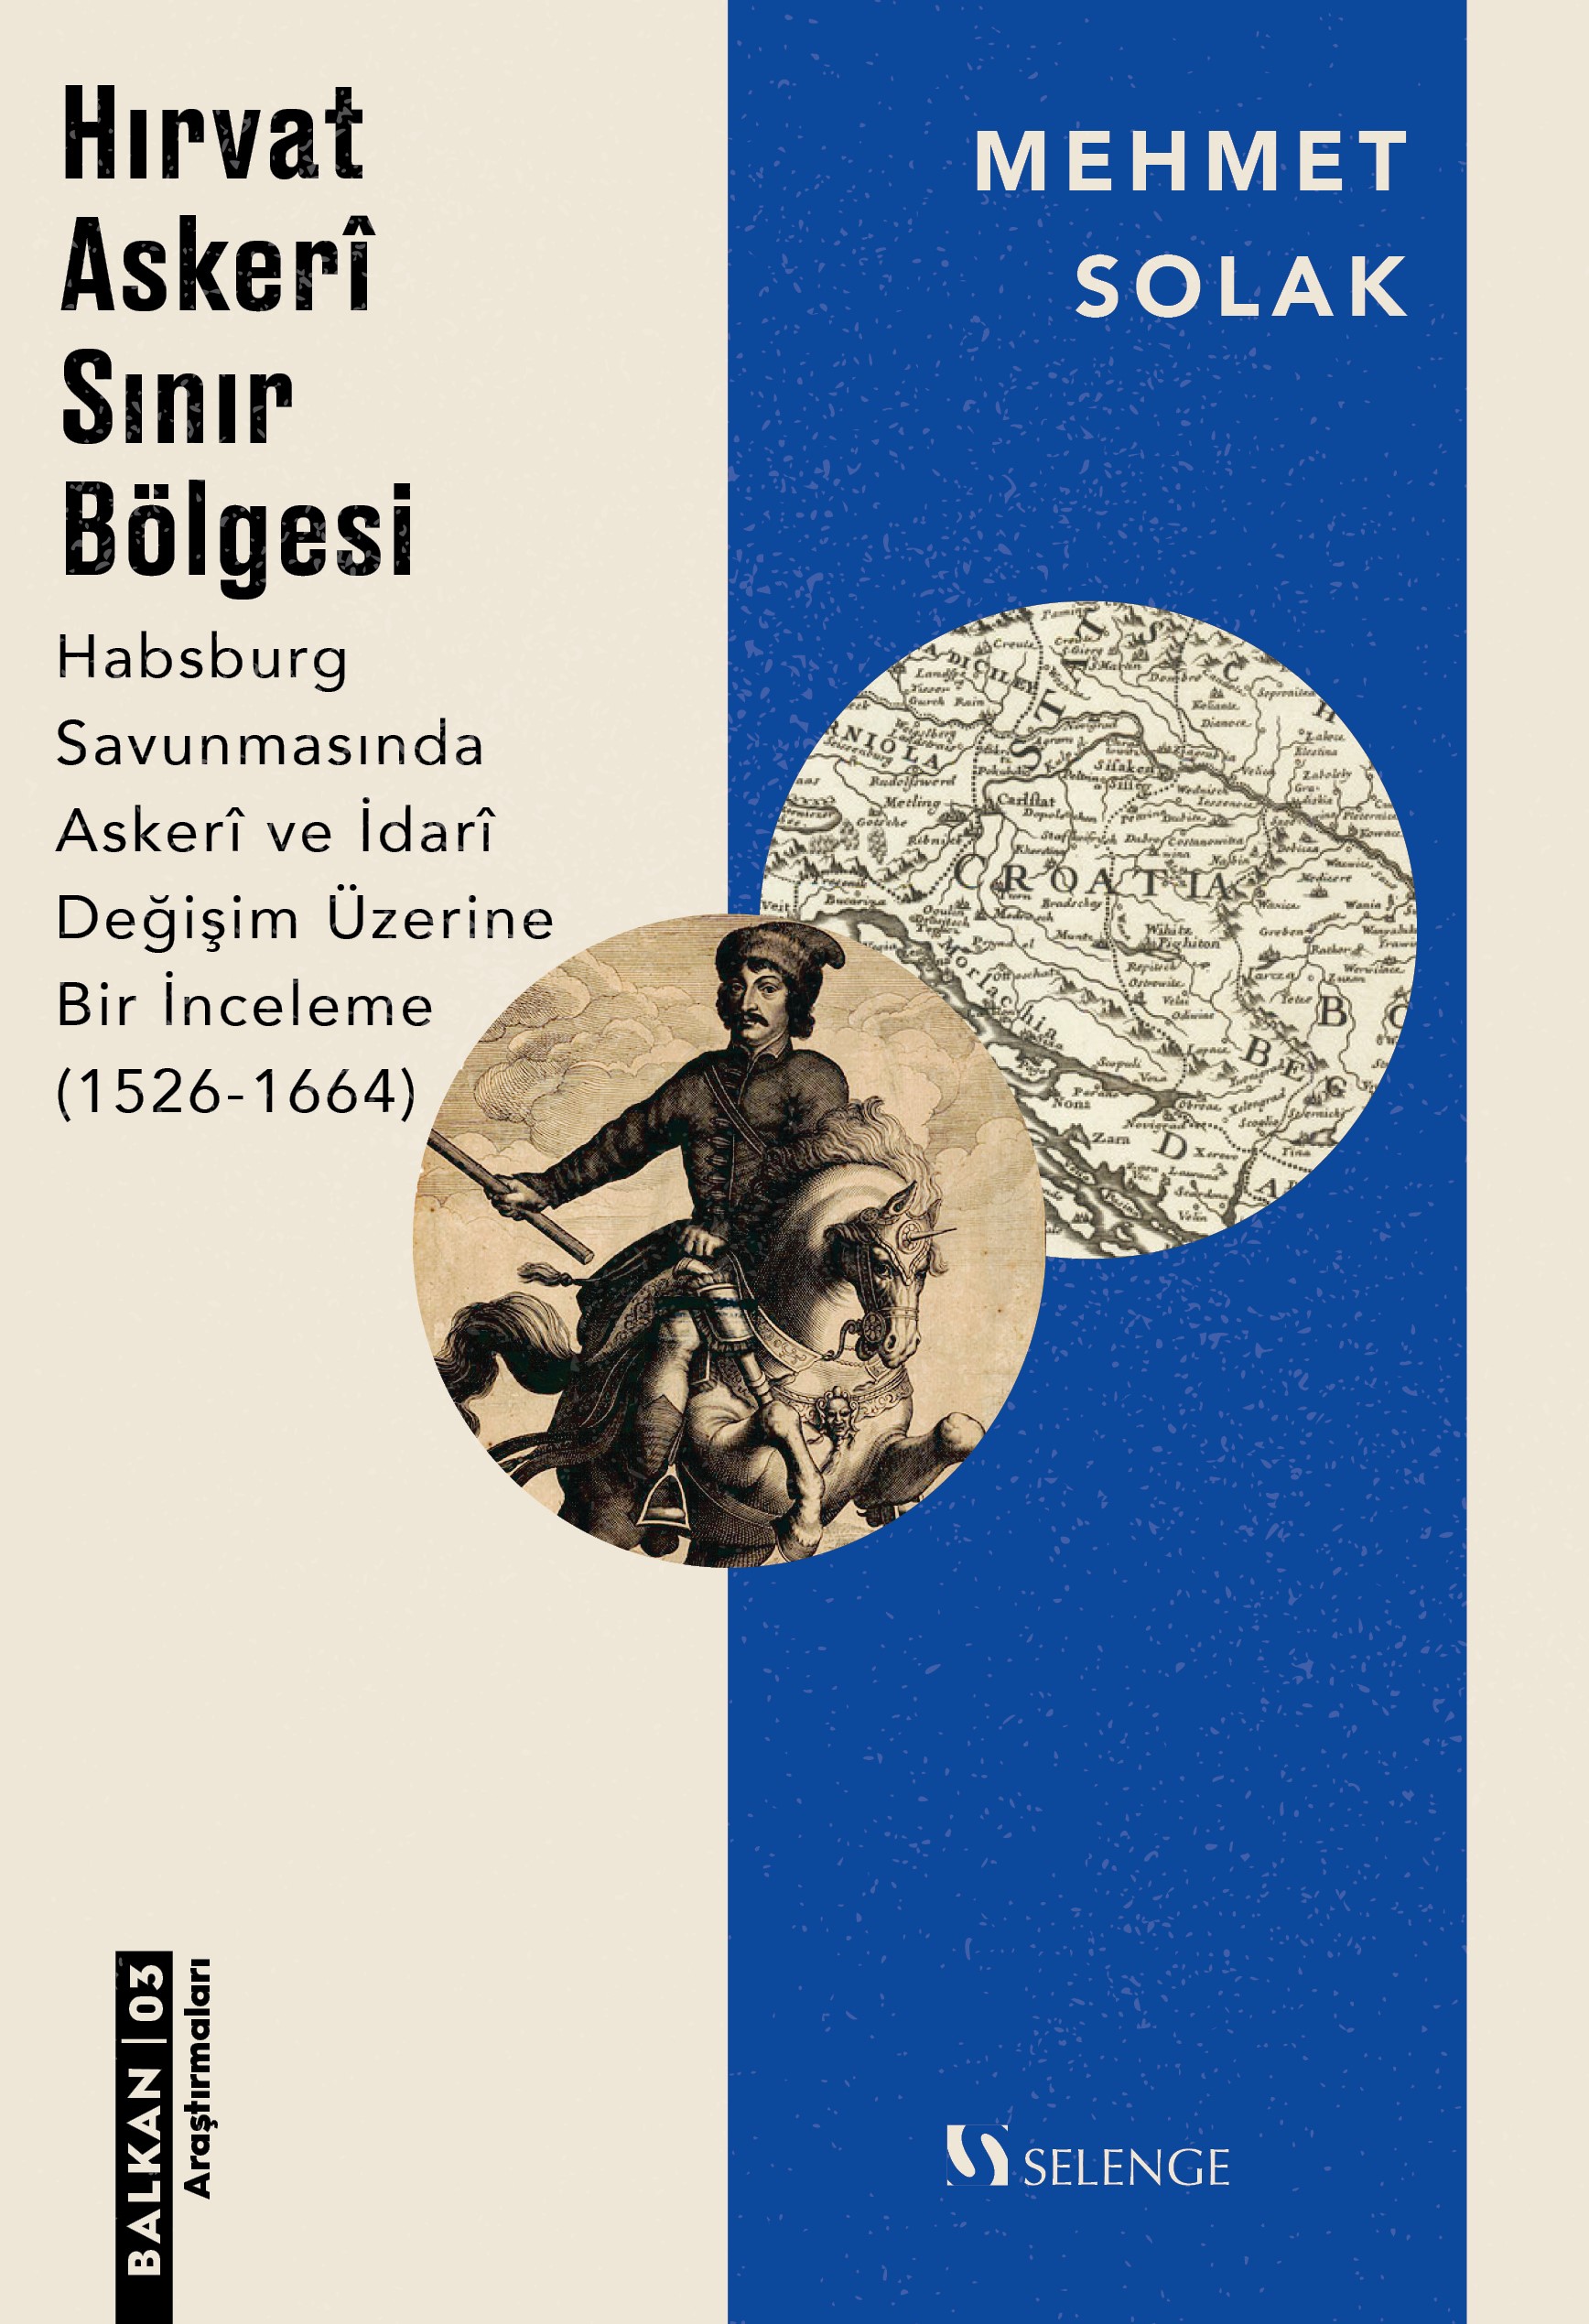 Hırvat Askeri Sınır Bölgesi & Habsburg Savunmasında Askeri ve İdari Değişim Üzerine Bir İnceleme (1526-1664)